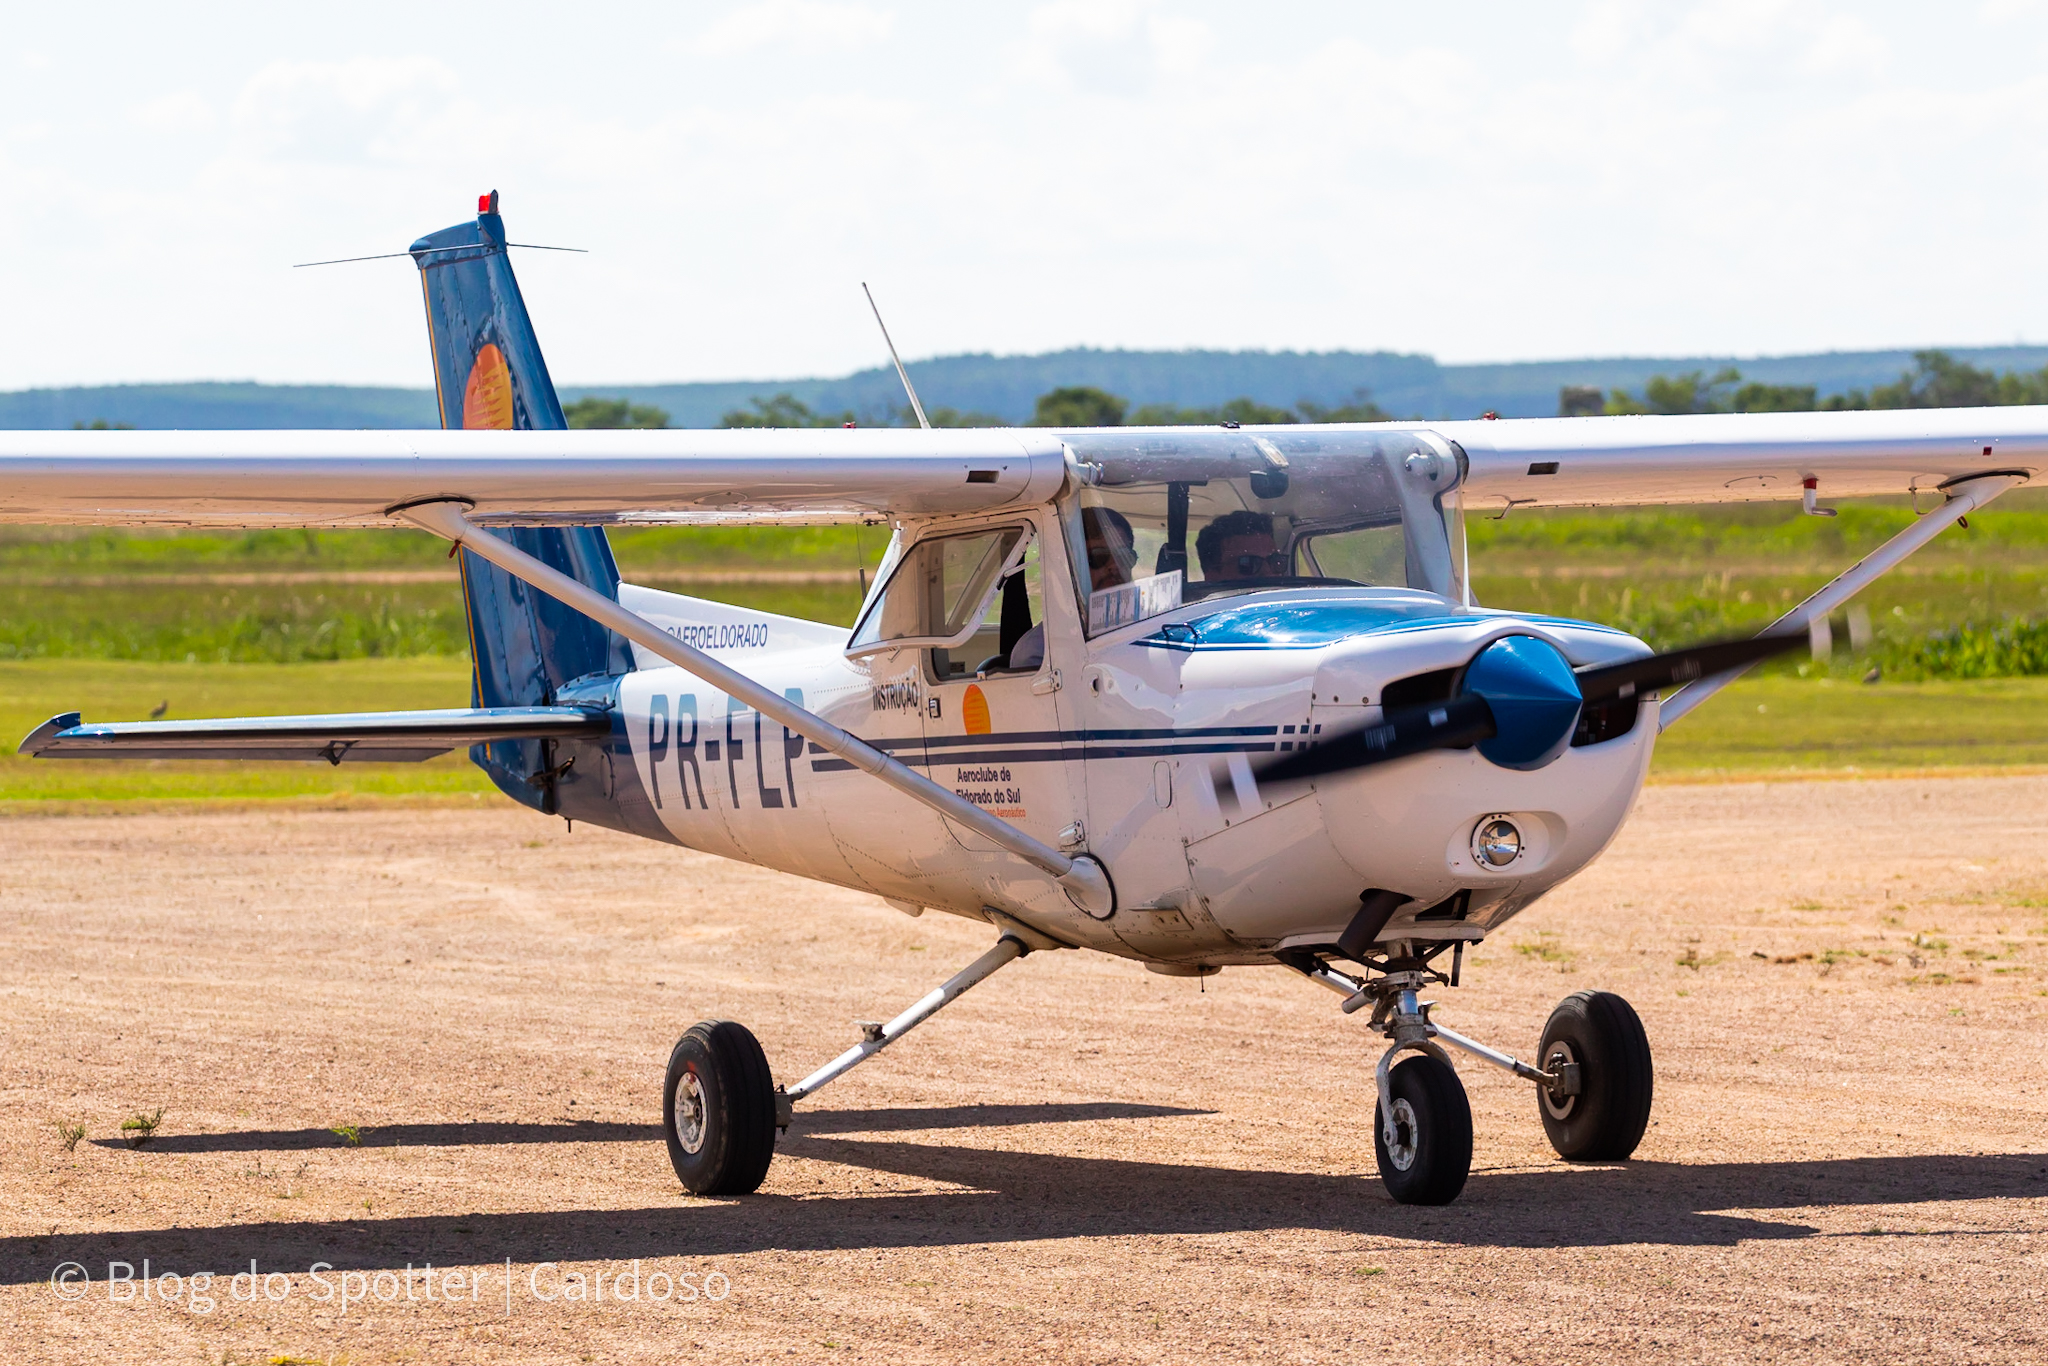 PR-FLP - Cessna C152 - Aeroclube de Eldorado do Sul